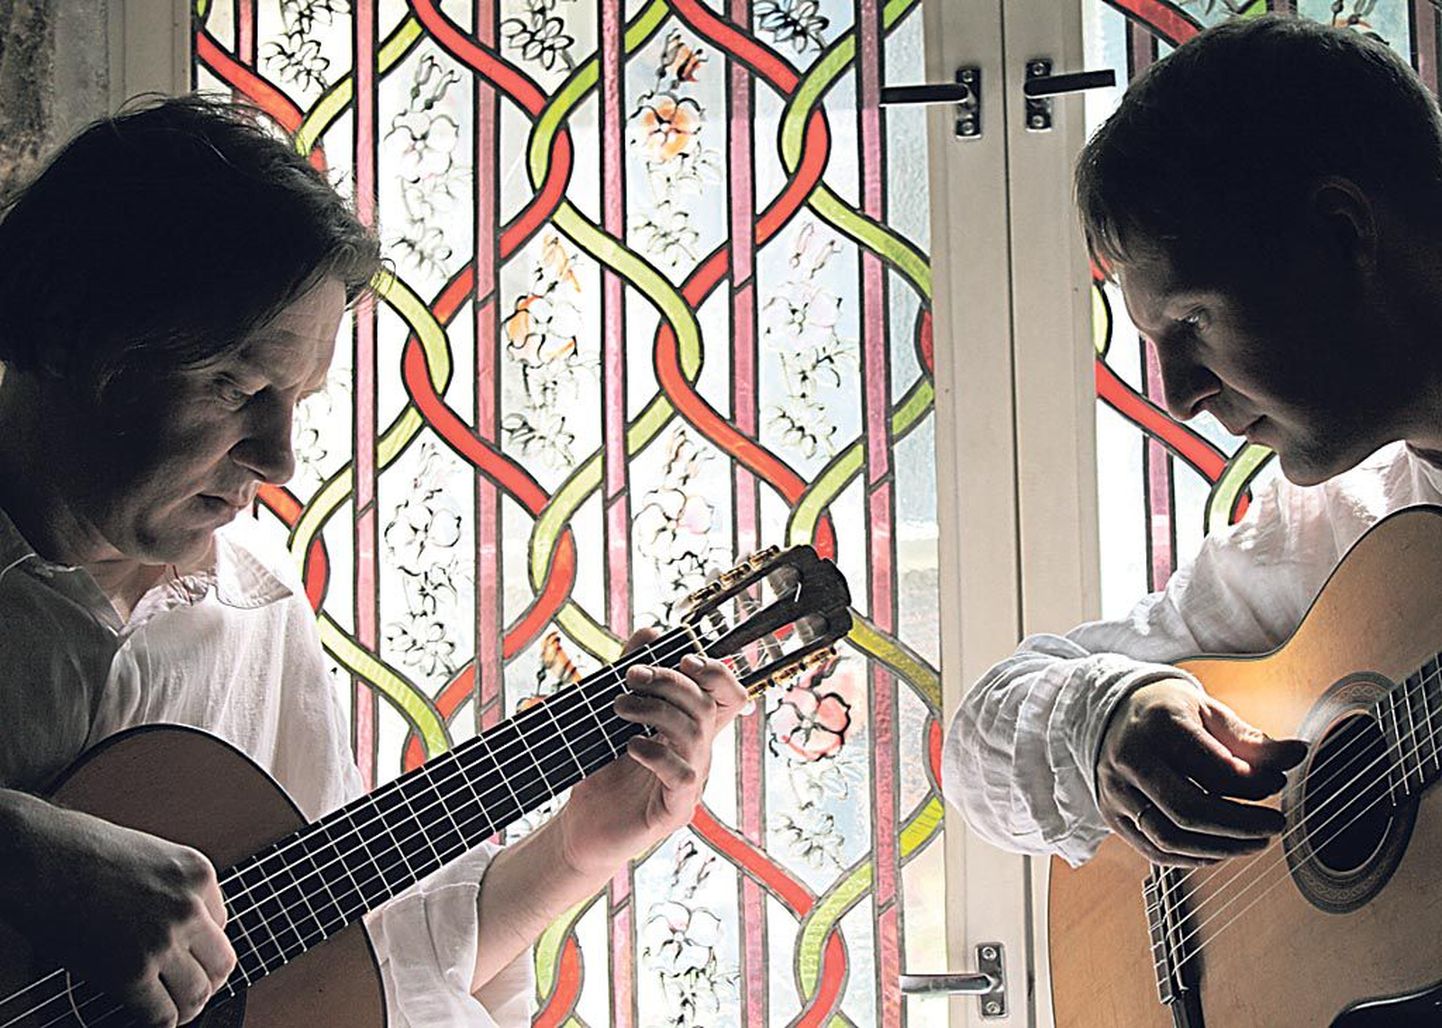 Pühapäevasel kontserdil esitavad 16. sajandi Inglismaalt pärineva lautomuusika seadeid kitarristid Lauri Jõeleht ja Eero Siivo Tallinnast.